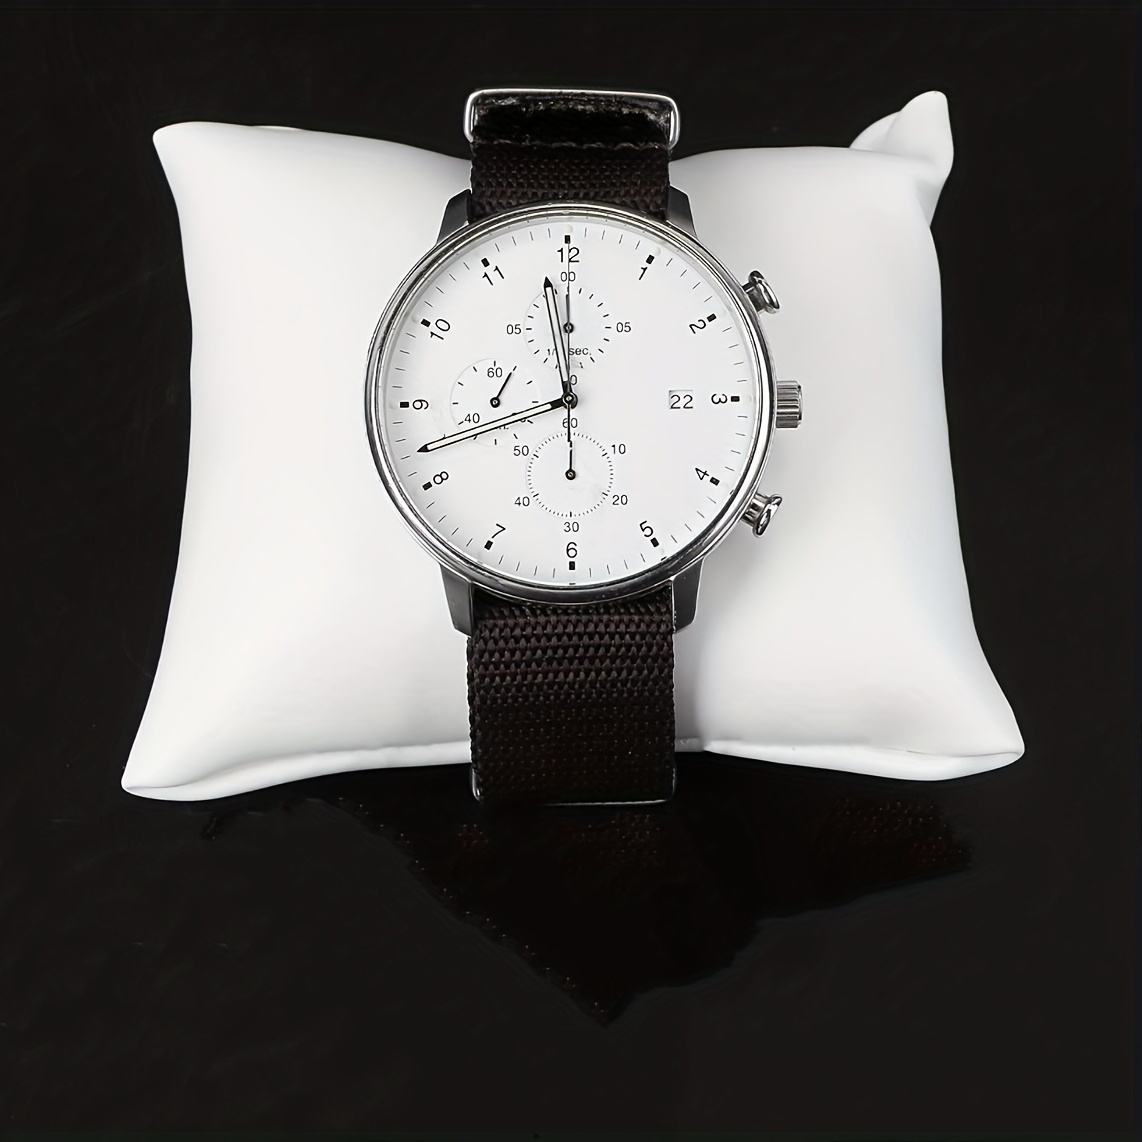 10 PCS Small Bracelet Watch Pillows Jewelry Display Pillows PU Leather  Bracelet Watch Pillows for Jewelry Watch Displays